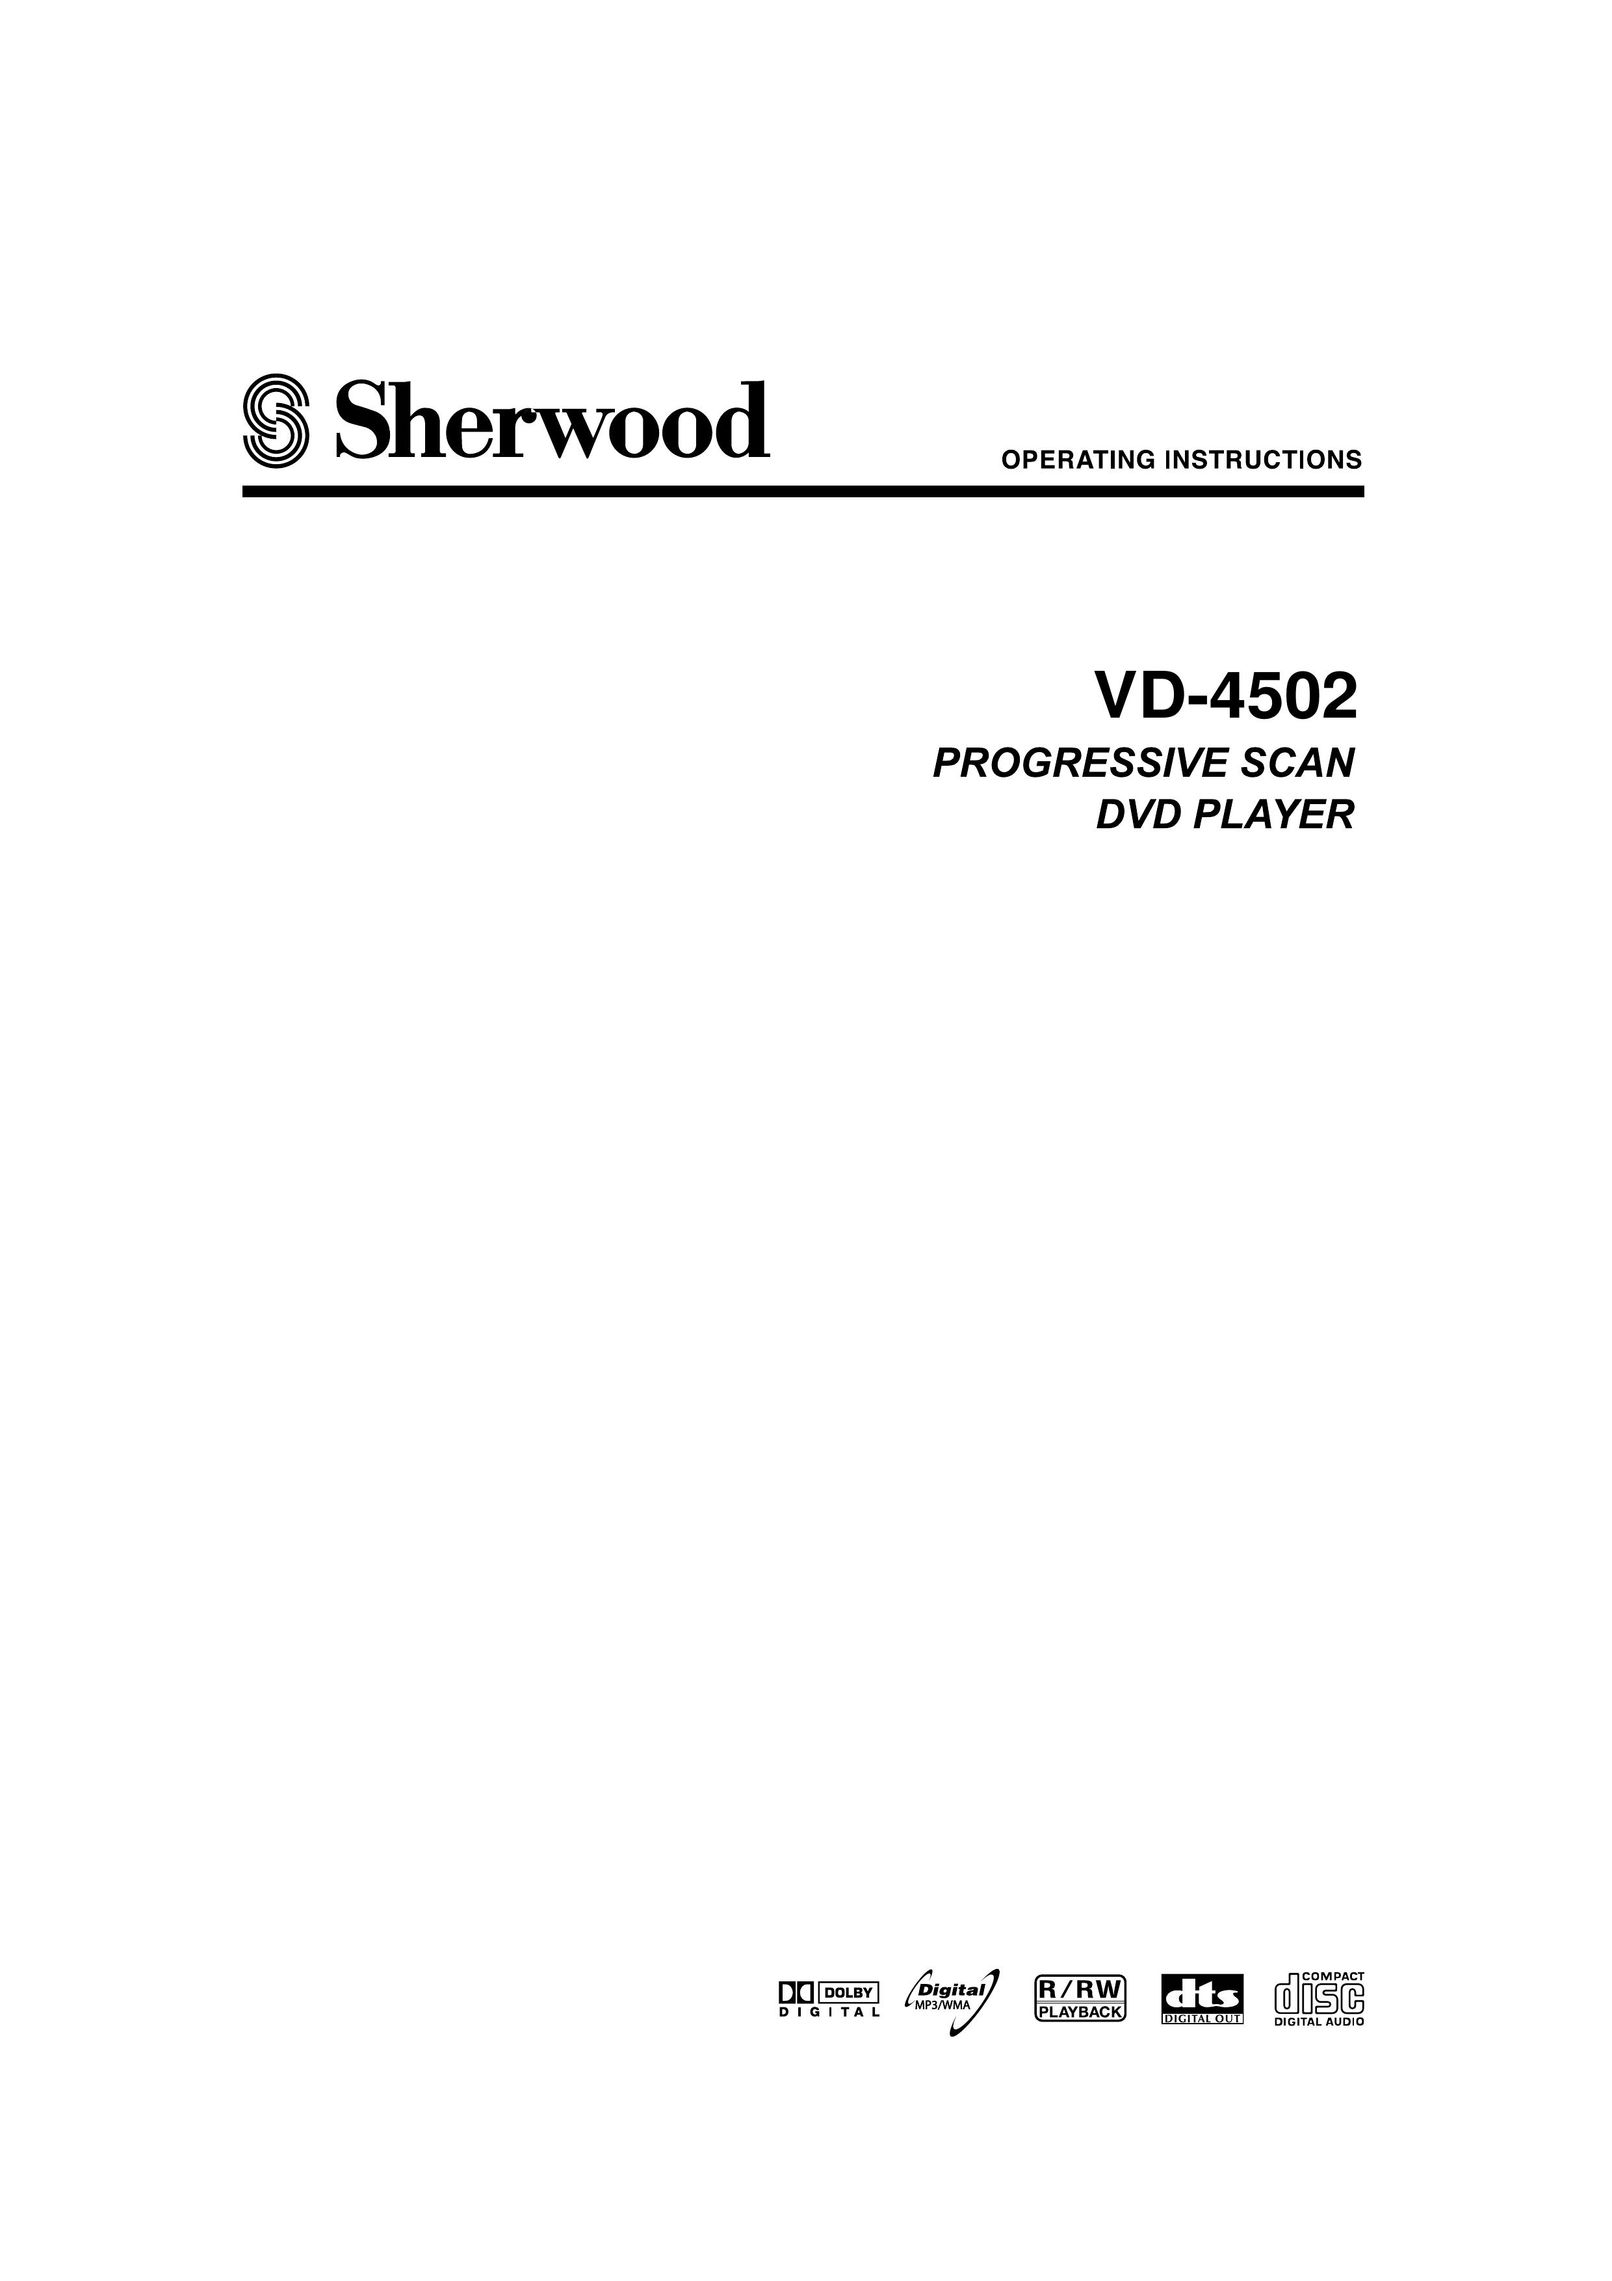 Sherwood VD-4502 DVD Player User Manual